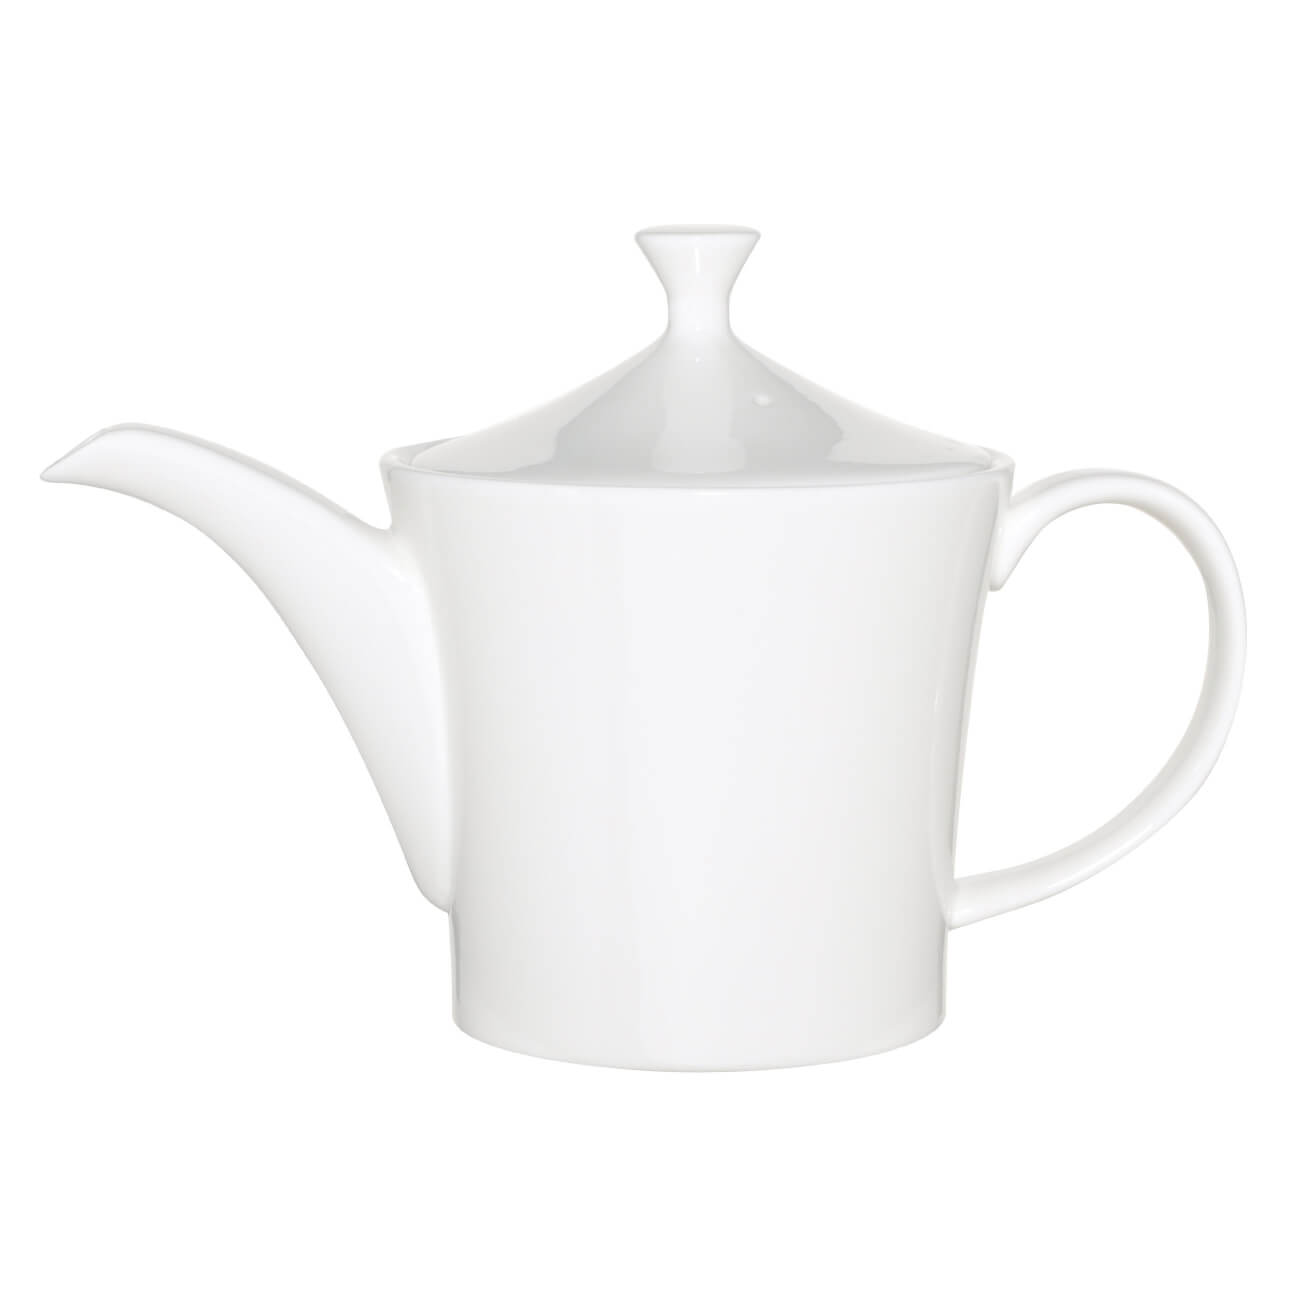 Чайник заварочный, 800 мл, фарфор F, белый, Ideal white изображение № 1